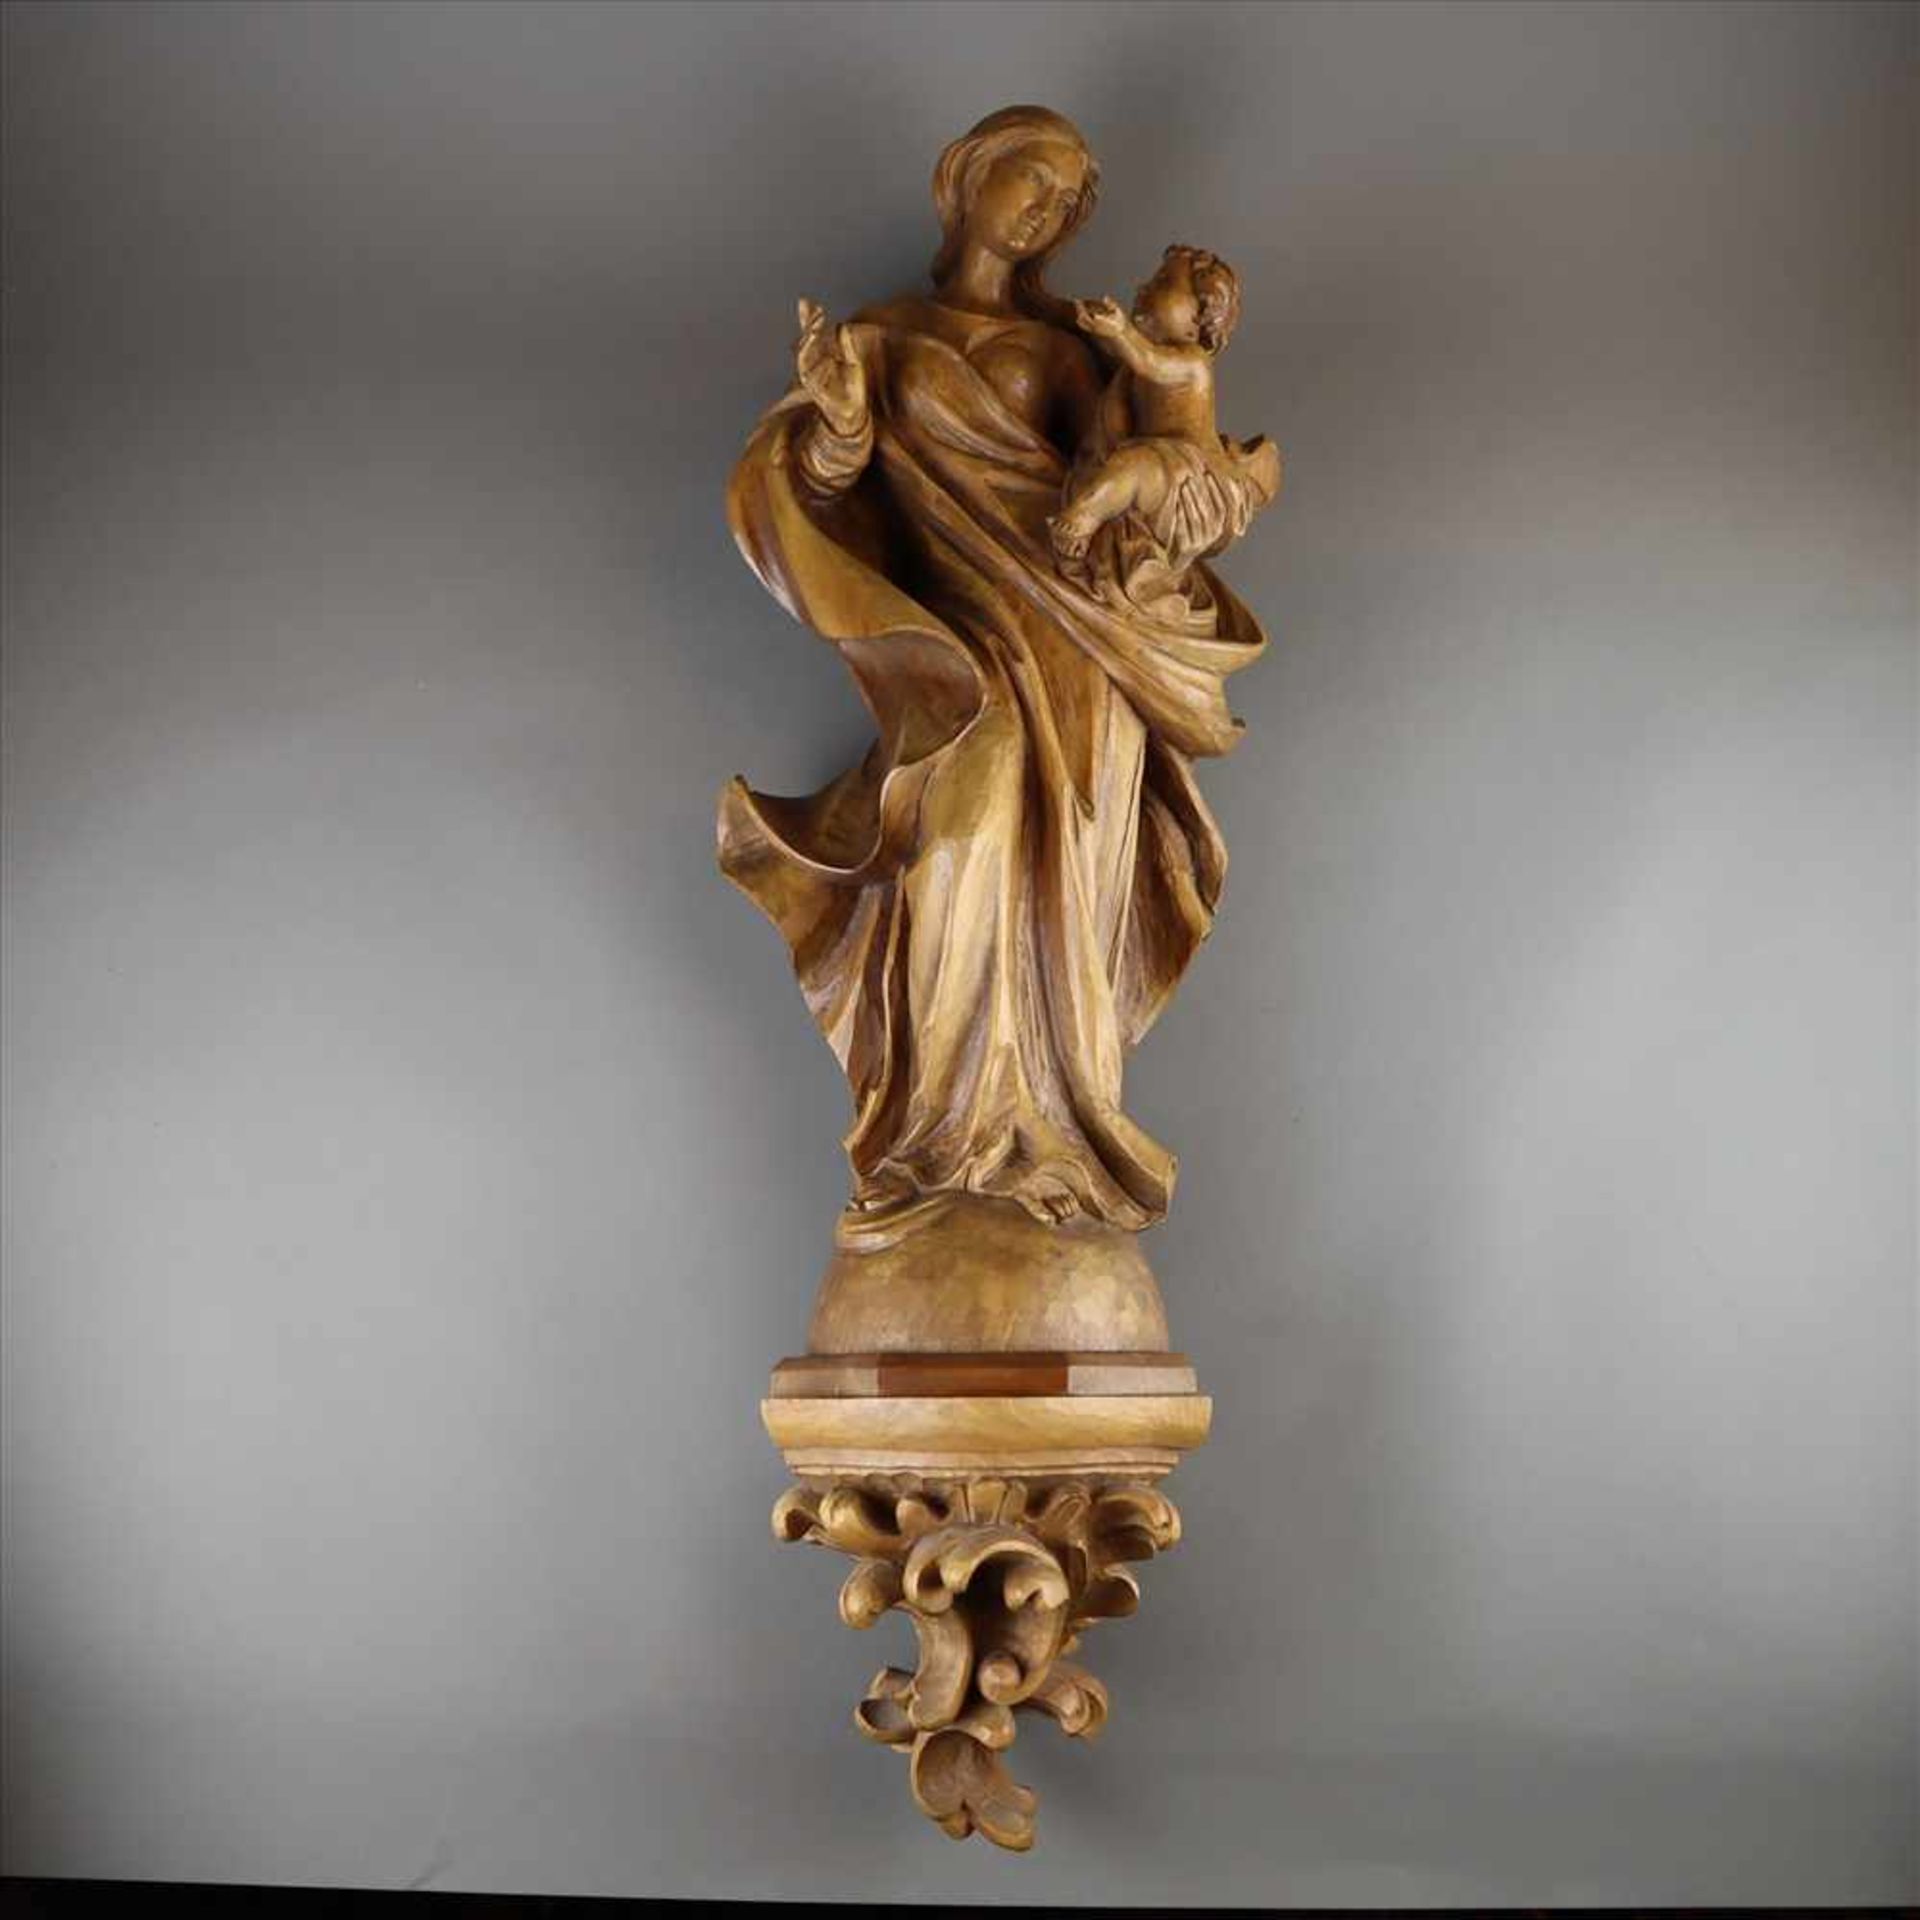 Madonna mit Kind - 20. Jahrhundert, Holz, vollrund geschnitzte Darstellung der Maria, den